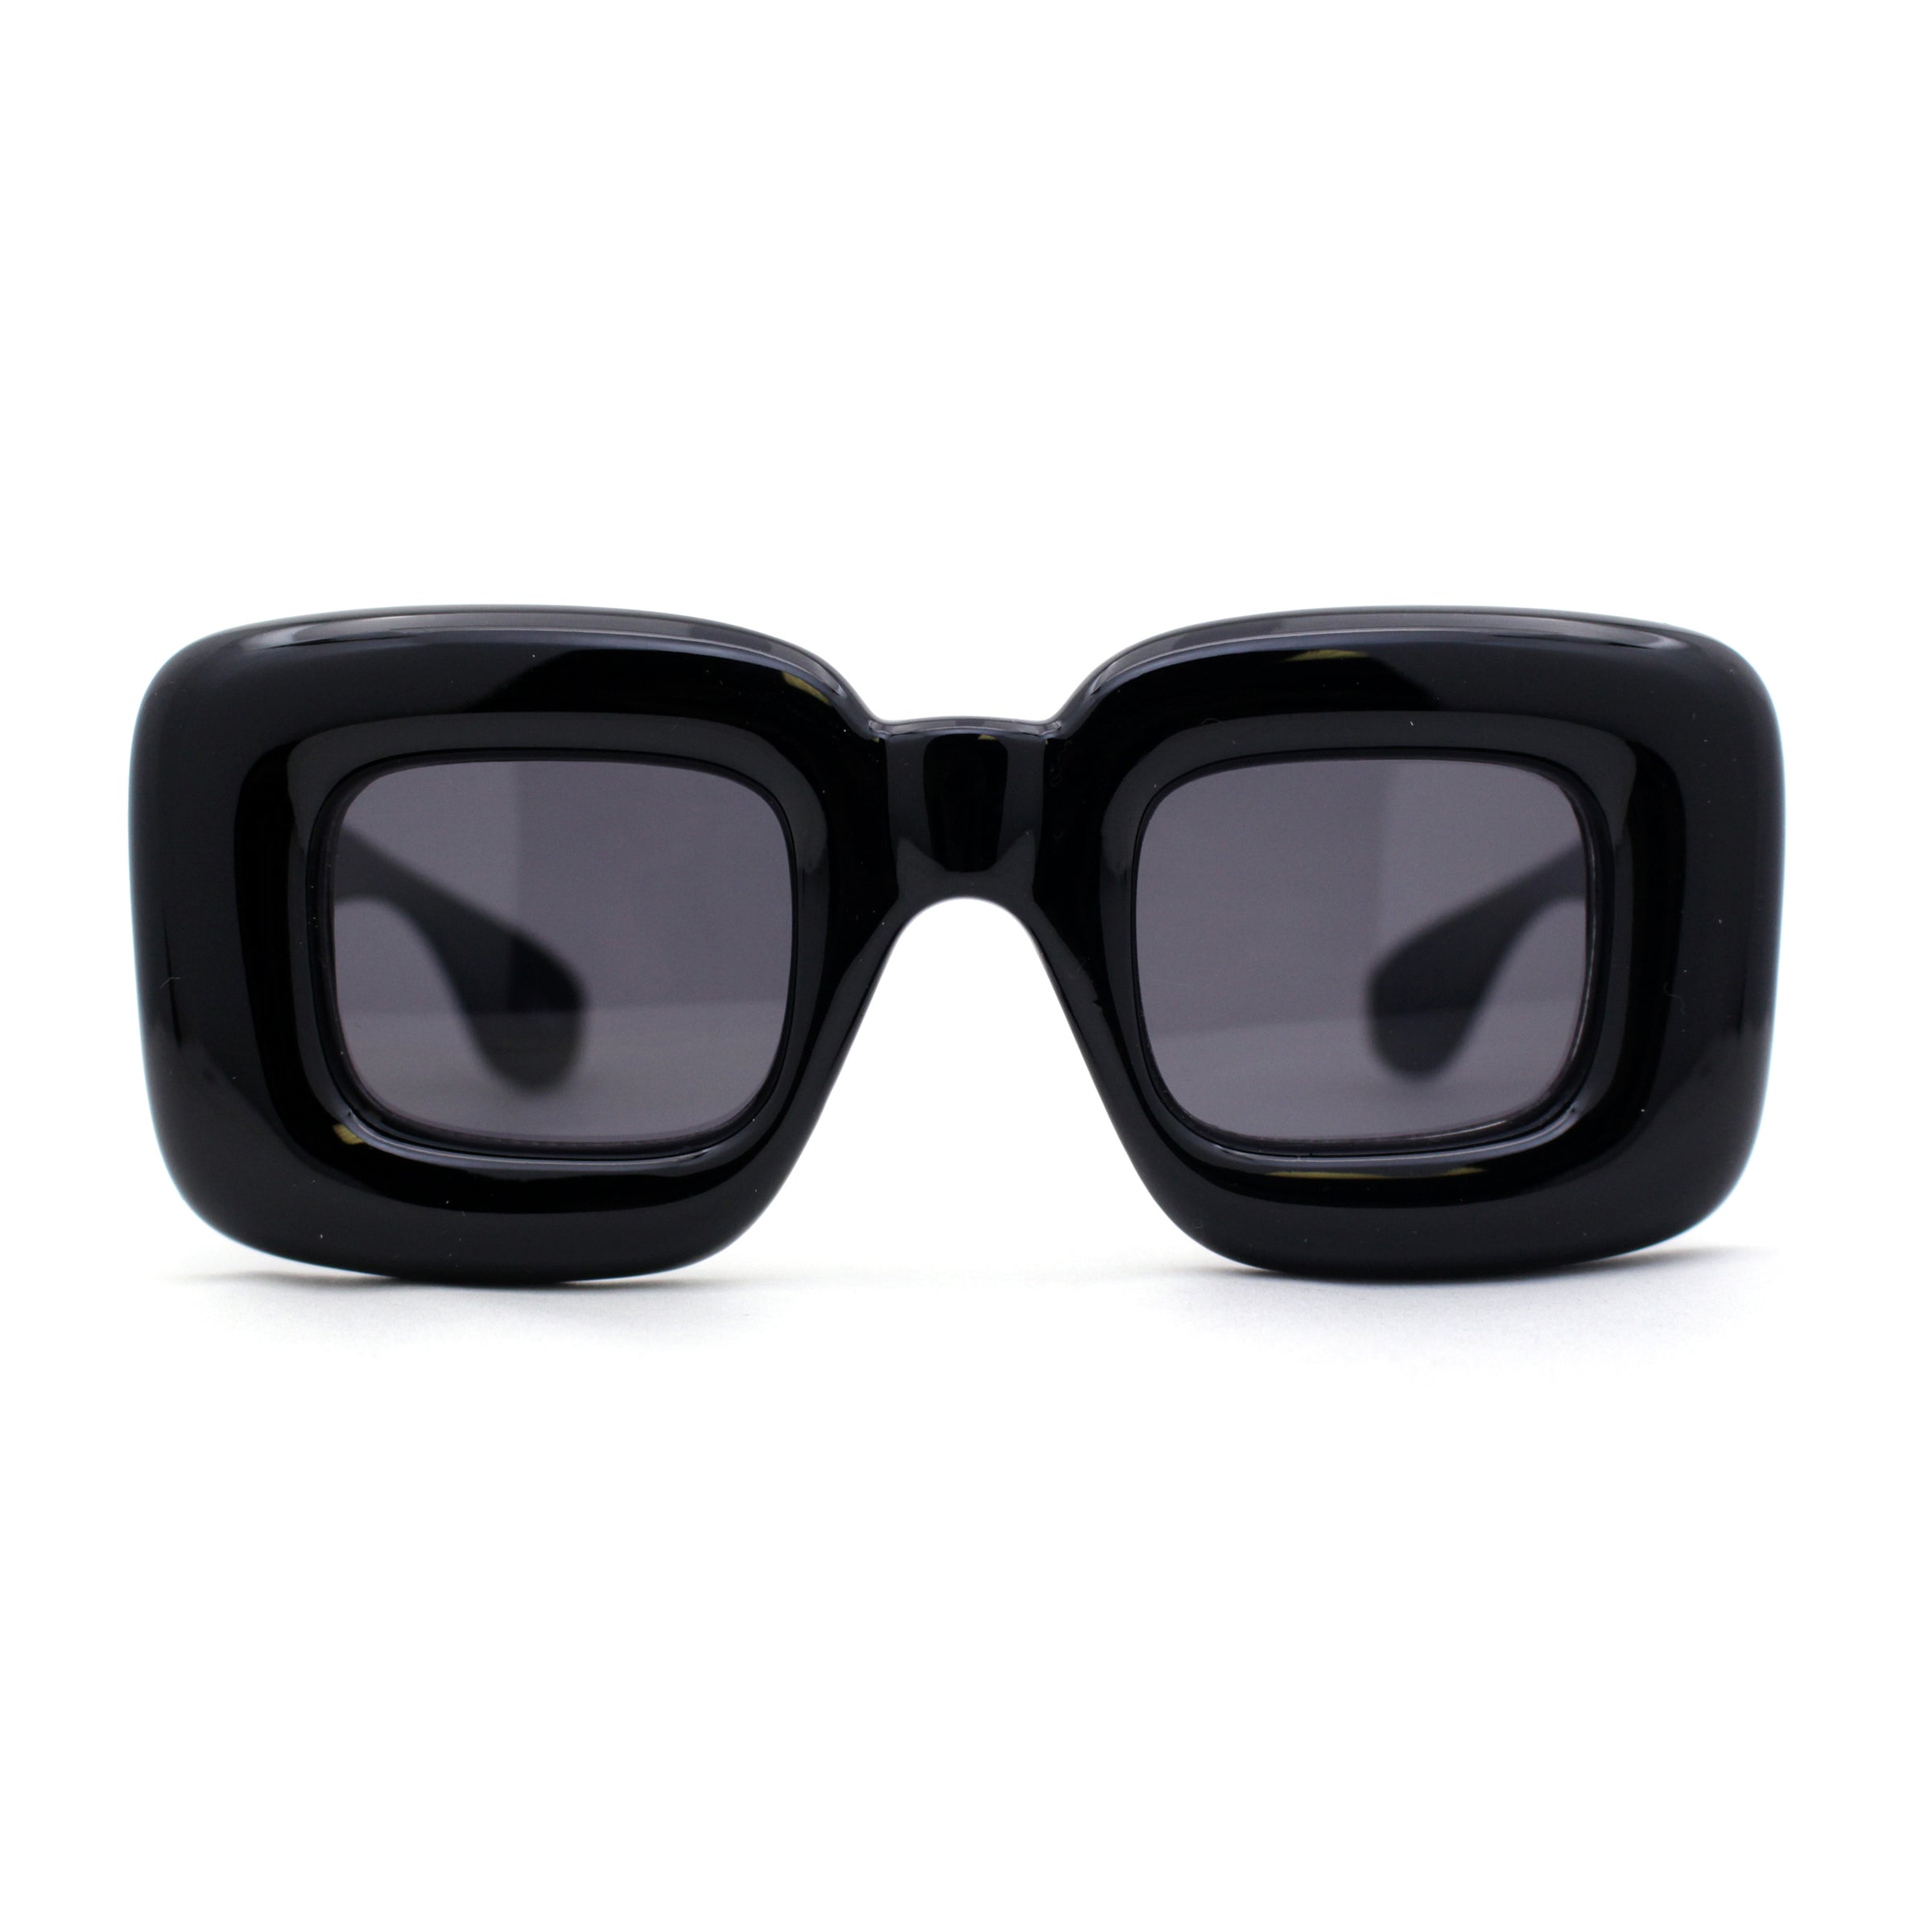 Rectangular Retro Sunglasses - Black